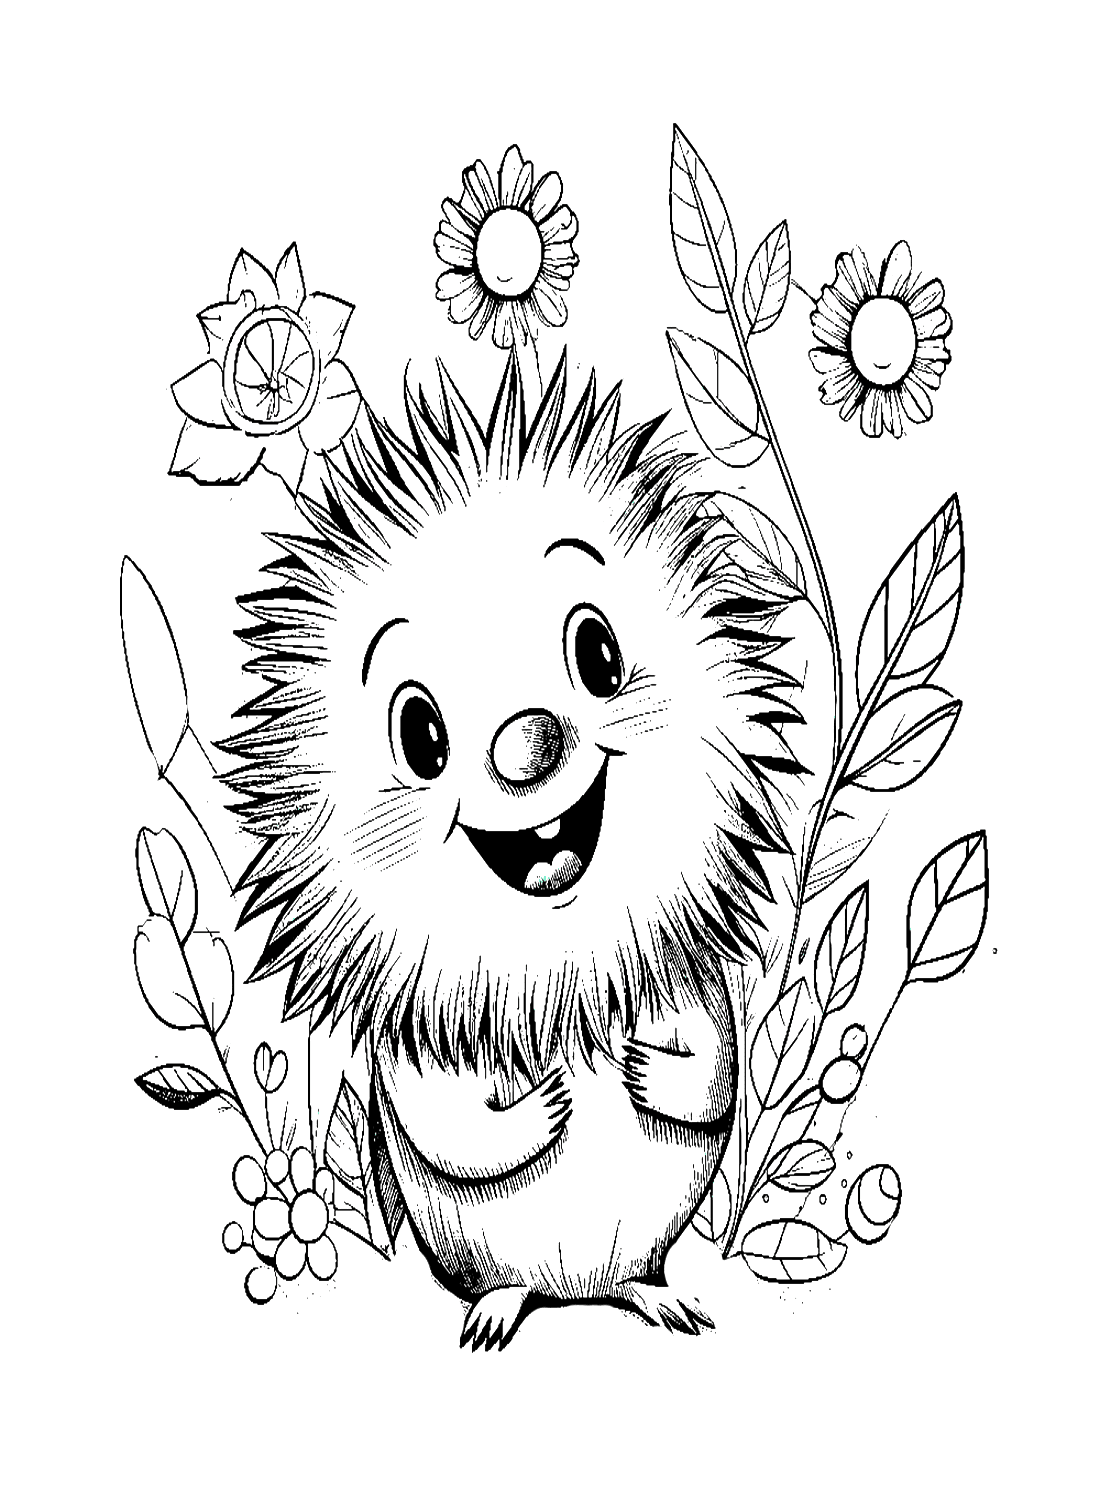 Раскраска Счастливый дикобраз от Porcupine